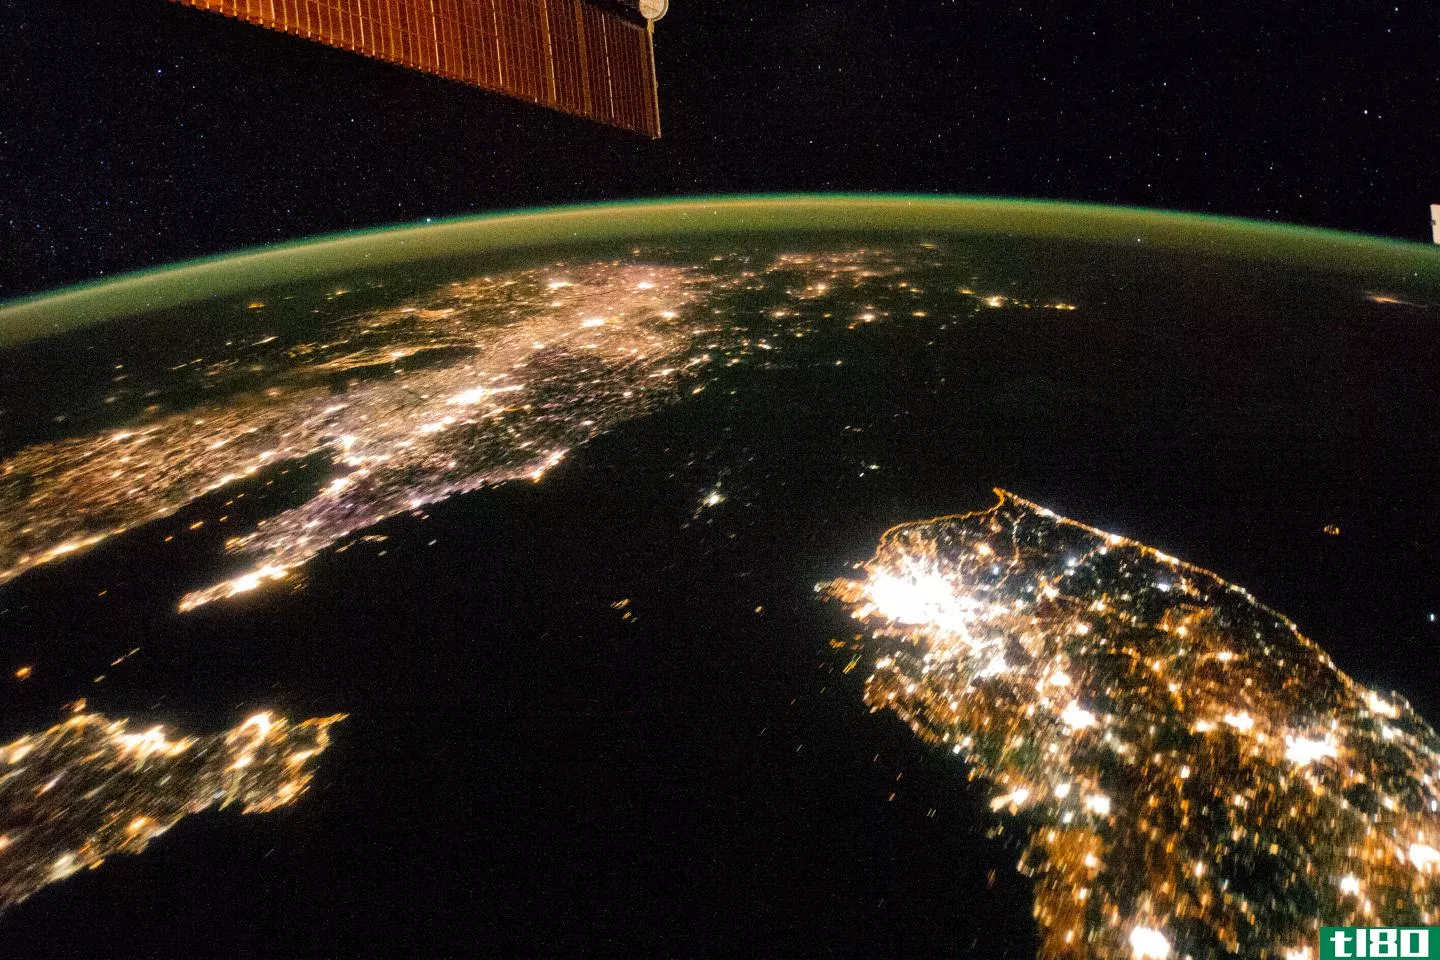 朝鲜为停电卫星照片辩护：“社会本质不在闪光灯下”